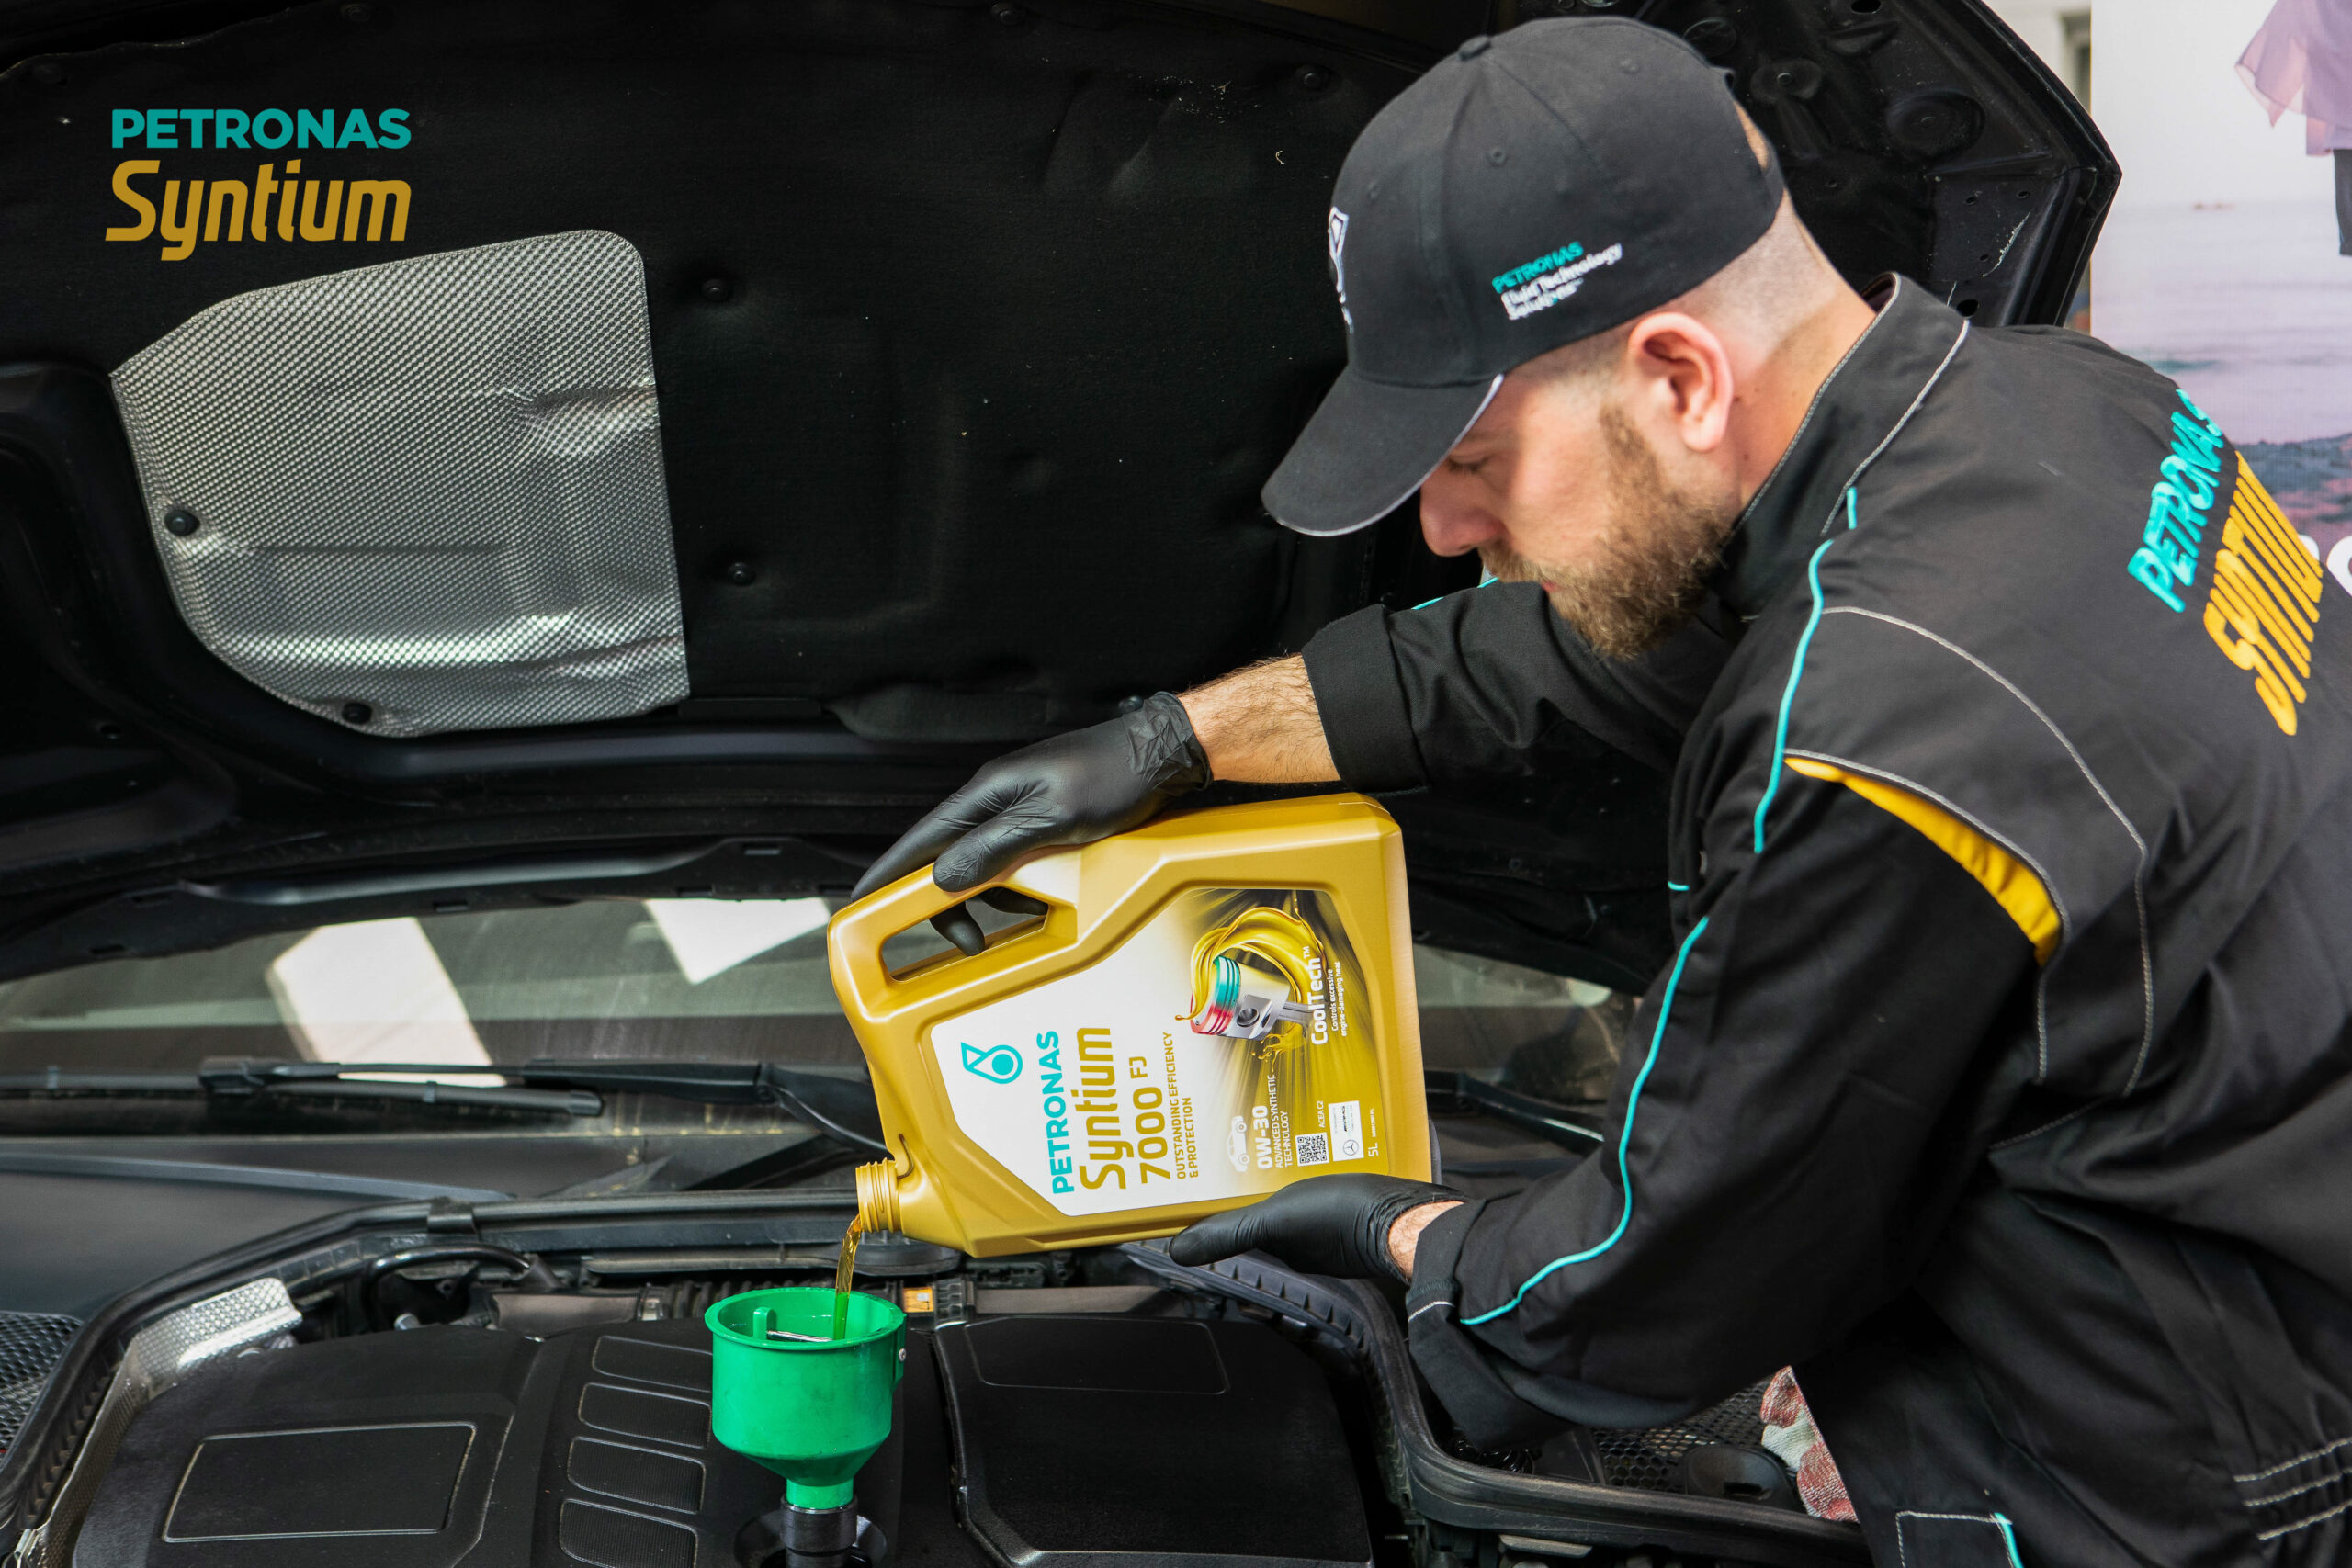 Autopromotec: Petronas presente con le nuove tecnologie nel campo dei lubrificanti